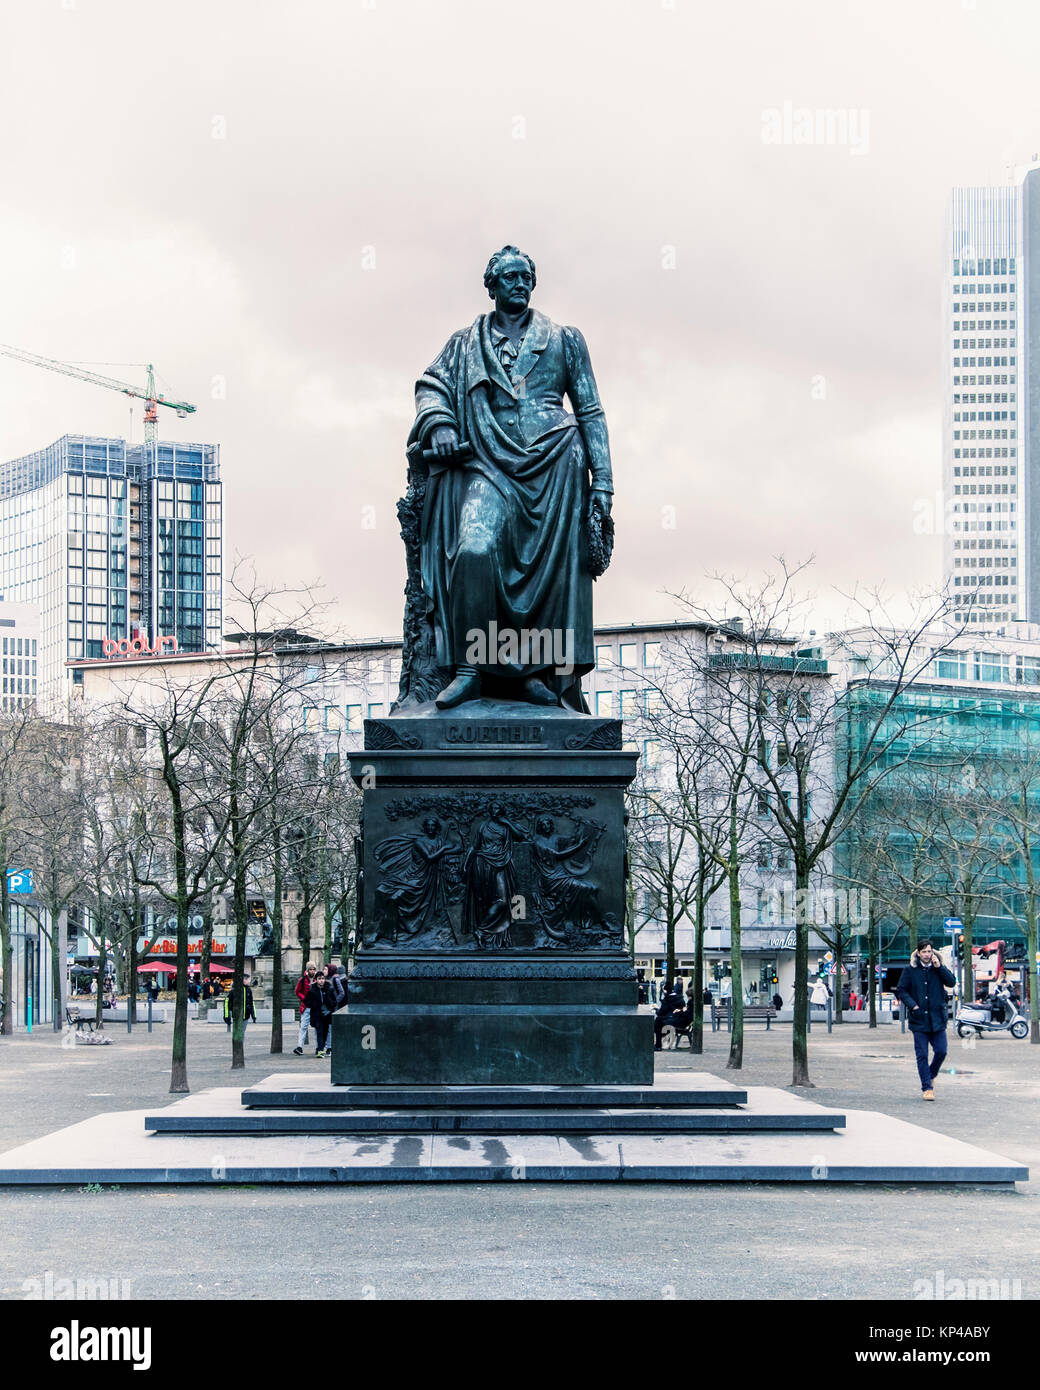 Francfort, Allemagne,Goetheplatz. Monument de Goethe, sculpture en bronze de l'écrivain allemand par le sculpteur Ludwig Schwanthaler Banque D'Images